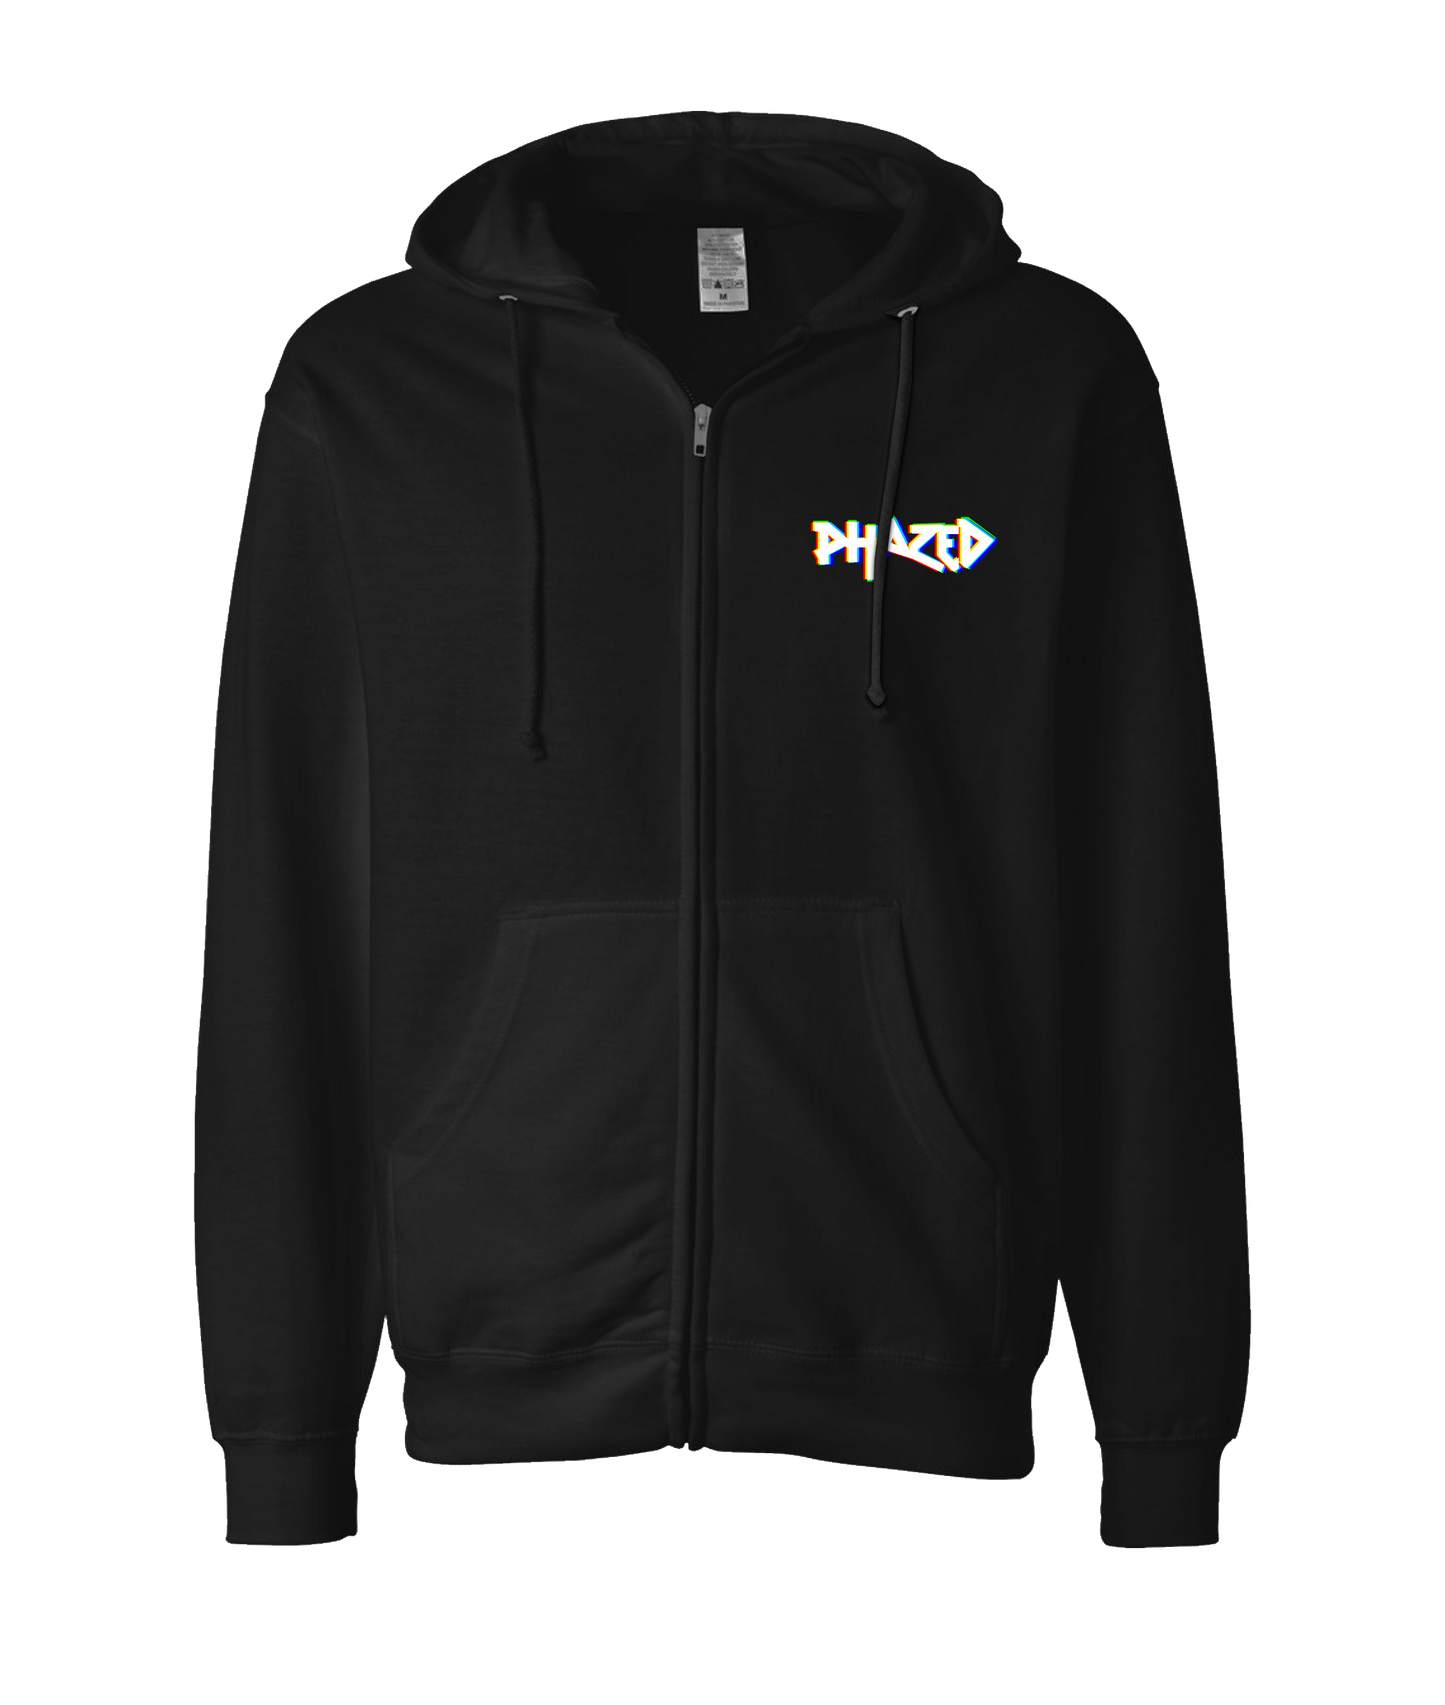 Phazed - Logo - Black Zip Up Hoodie